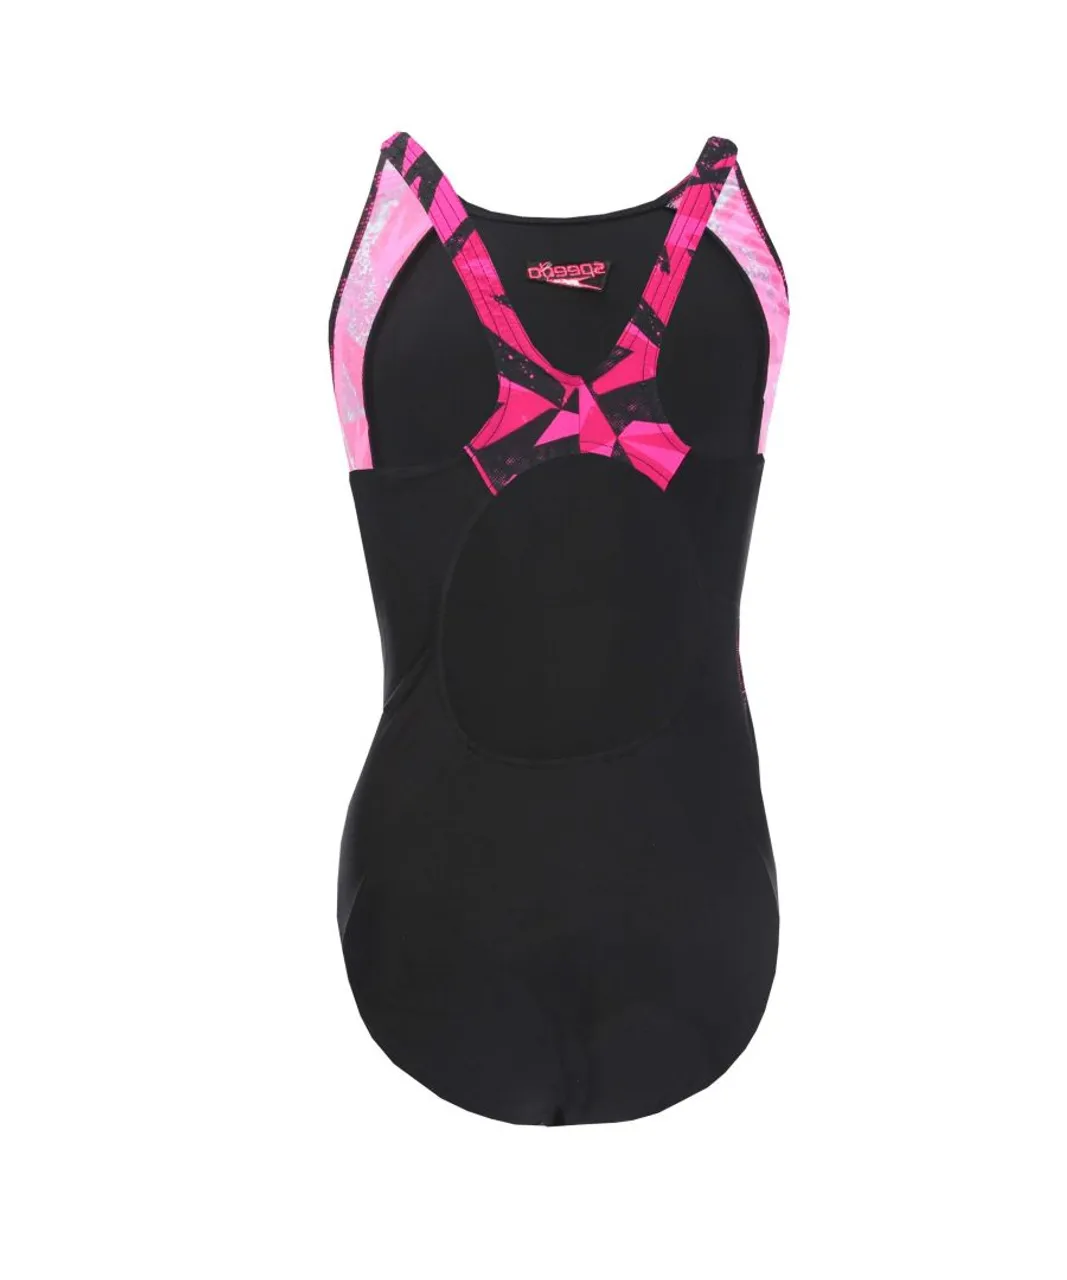 Speedo Girls Girl's Hyper Boom Splice Muscleback Swimsuit in black pink Nylon